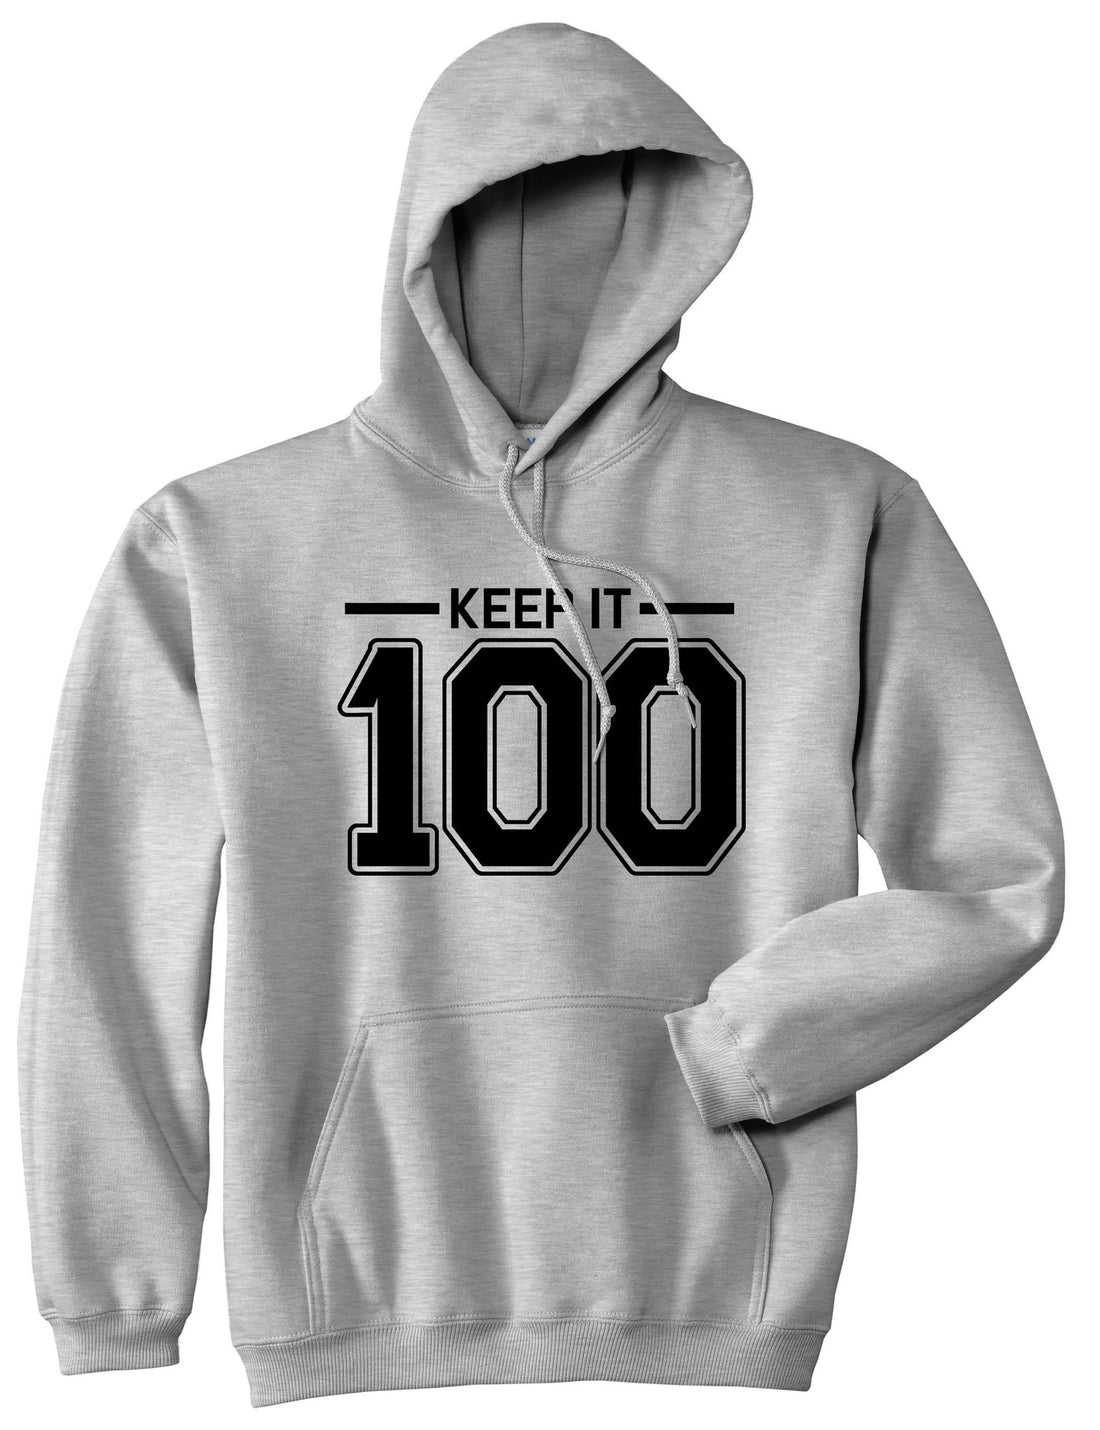 Keep It 100 Pullover Hoodie Hoody in Grey by Kings Of NY